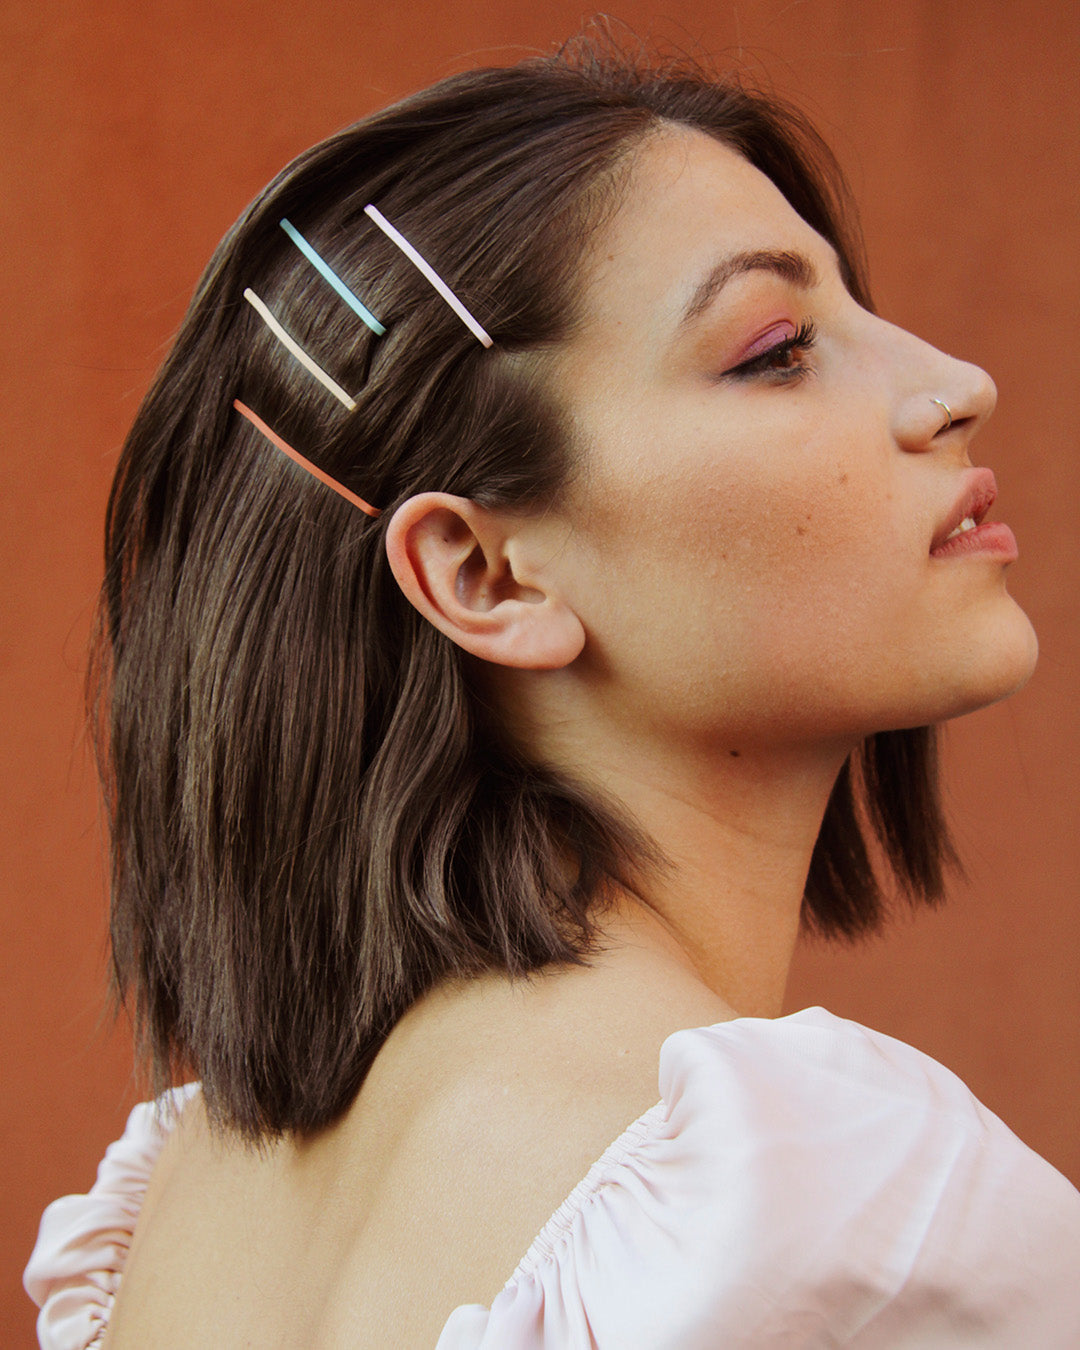 BANDED Women’s Premium Hair Accessories - Vast Horizon - Matte Silicone Pins